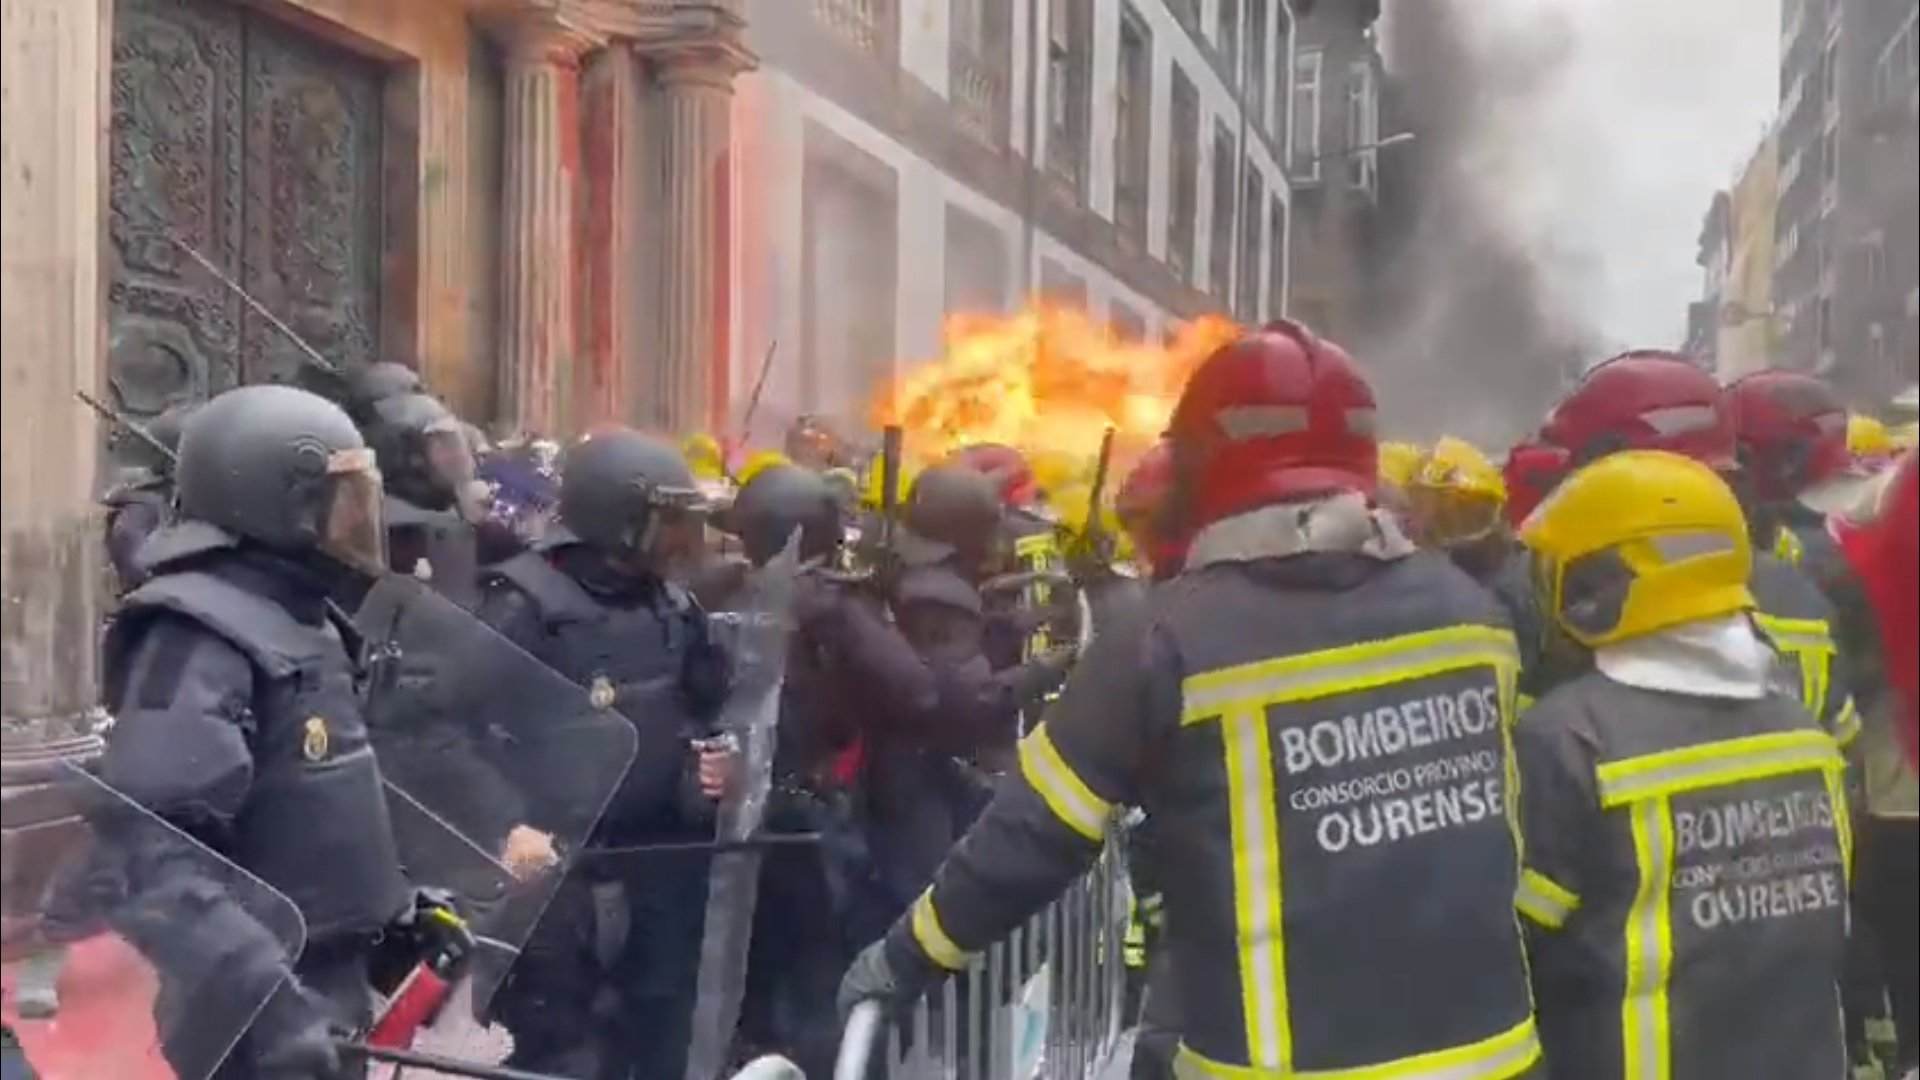 Batalla campal entre bomberos gallegos y policías españoles en Ourense | VÍDEO